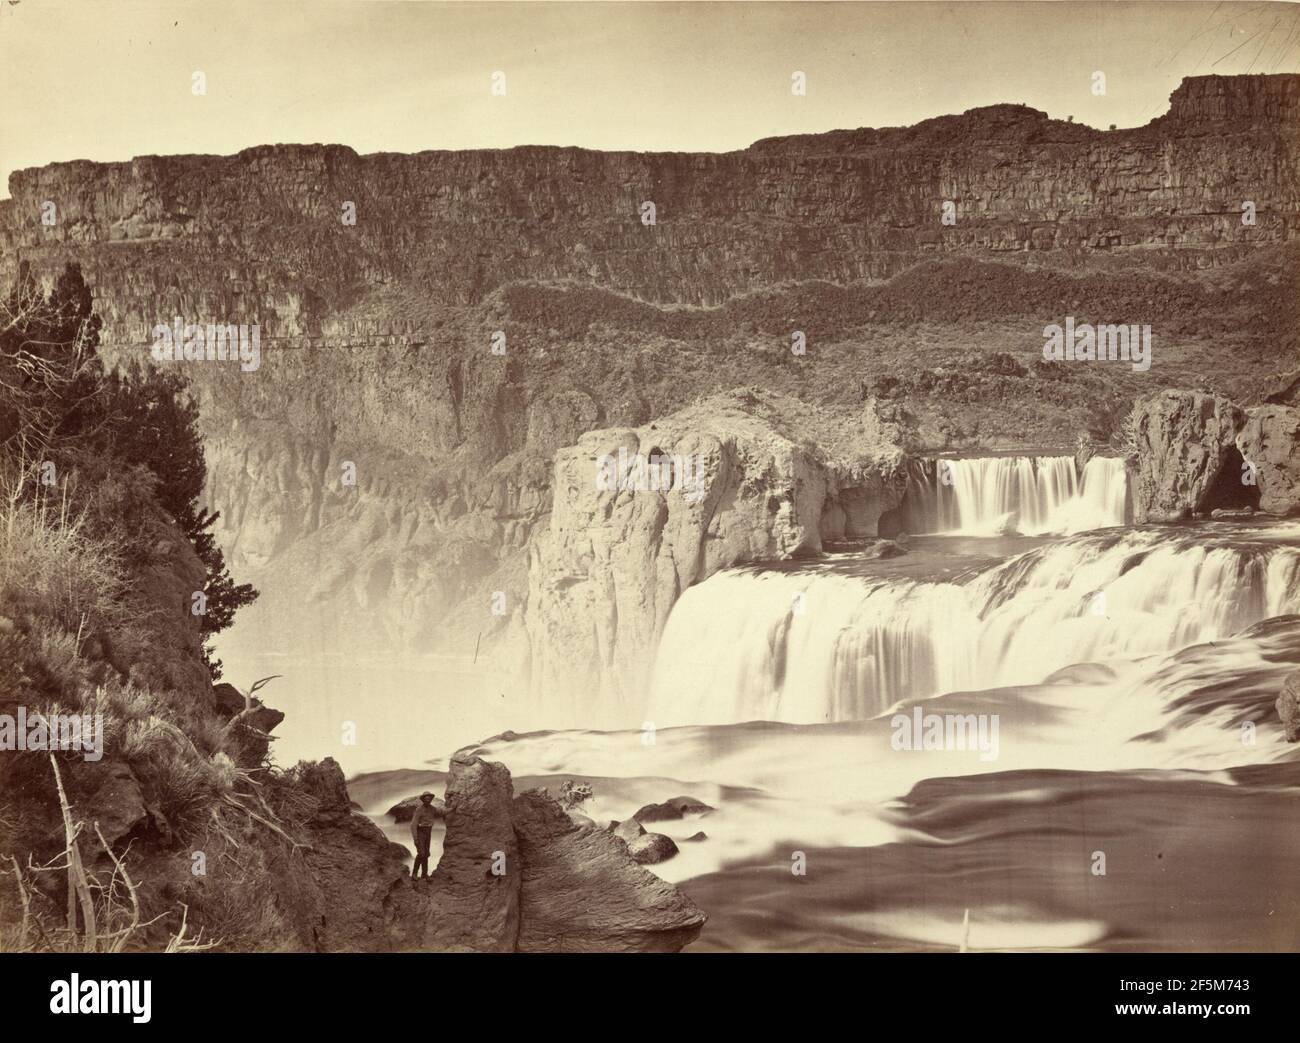 Shoshone Falls, Snake River, Idaho. Vue en milieu de journée. Murs adjacents d'environ 1,000 pieds de hauteur. Timothy H. O'Sullivan (américain, vers 1840 - 1882) Banque D'Images